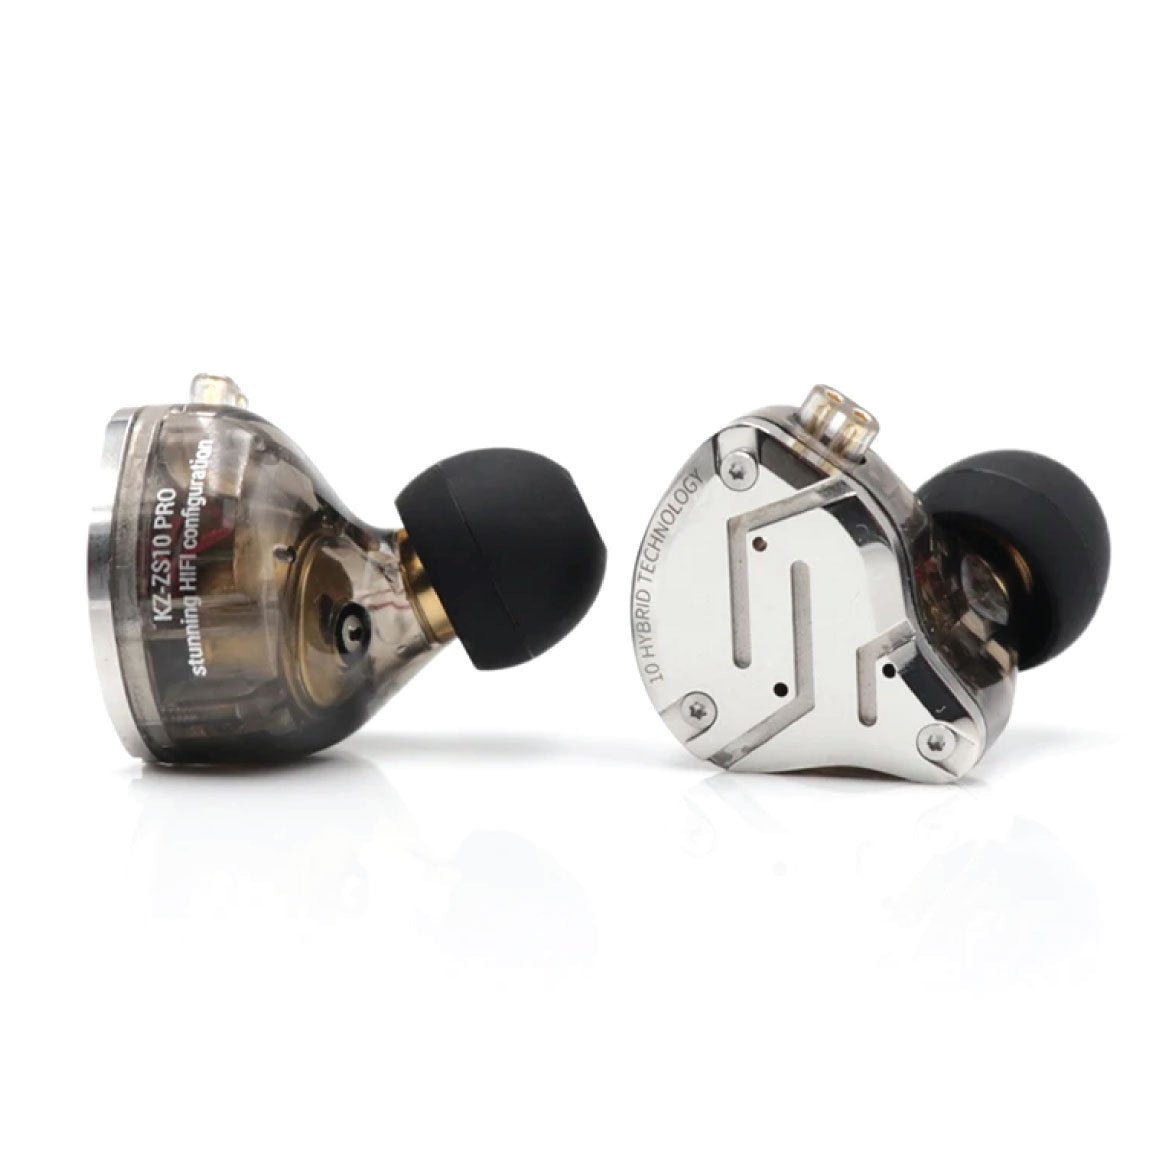 KZ ZS10 Pro - In-Ear Earphones